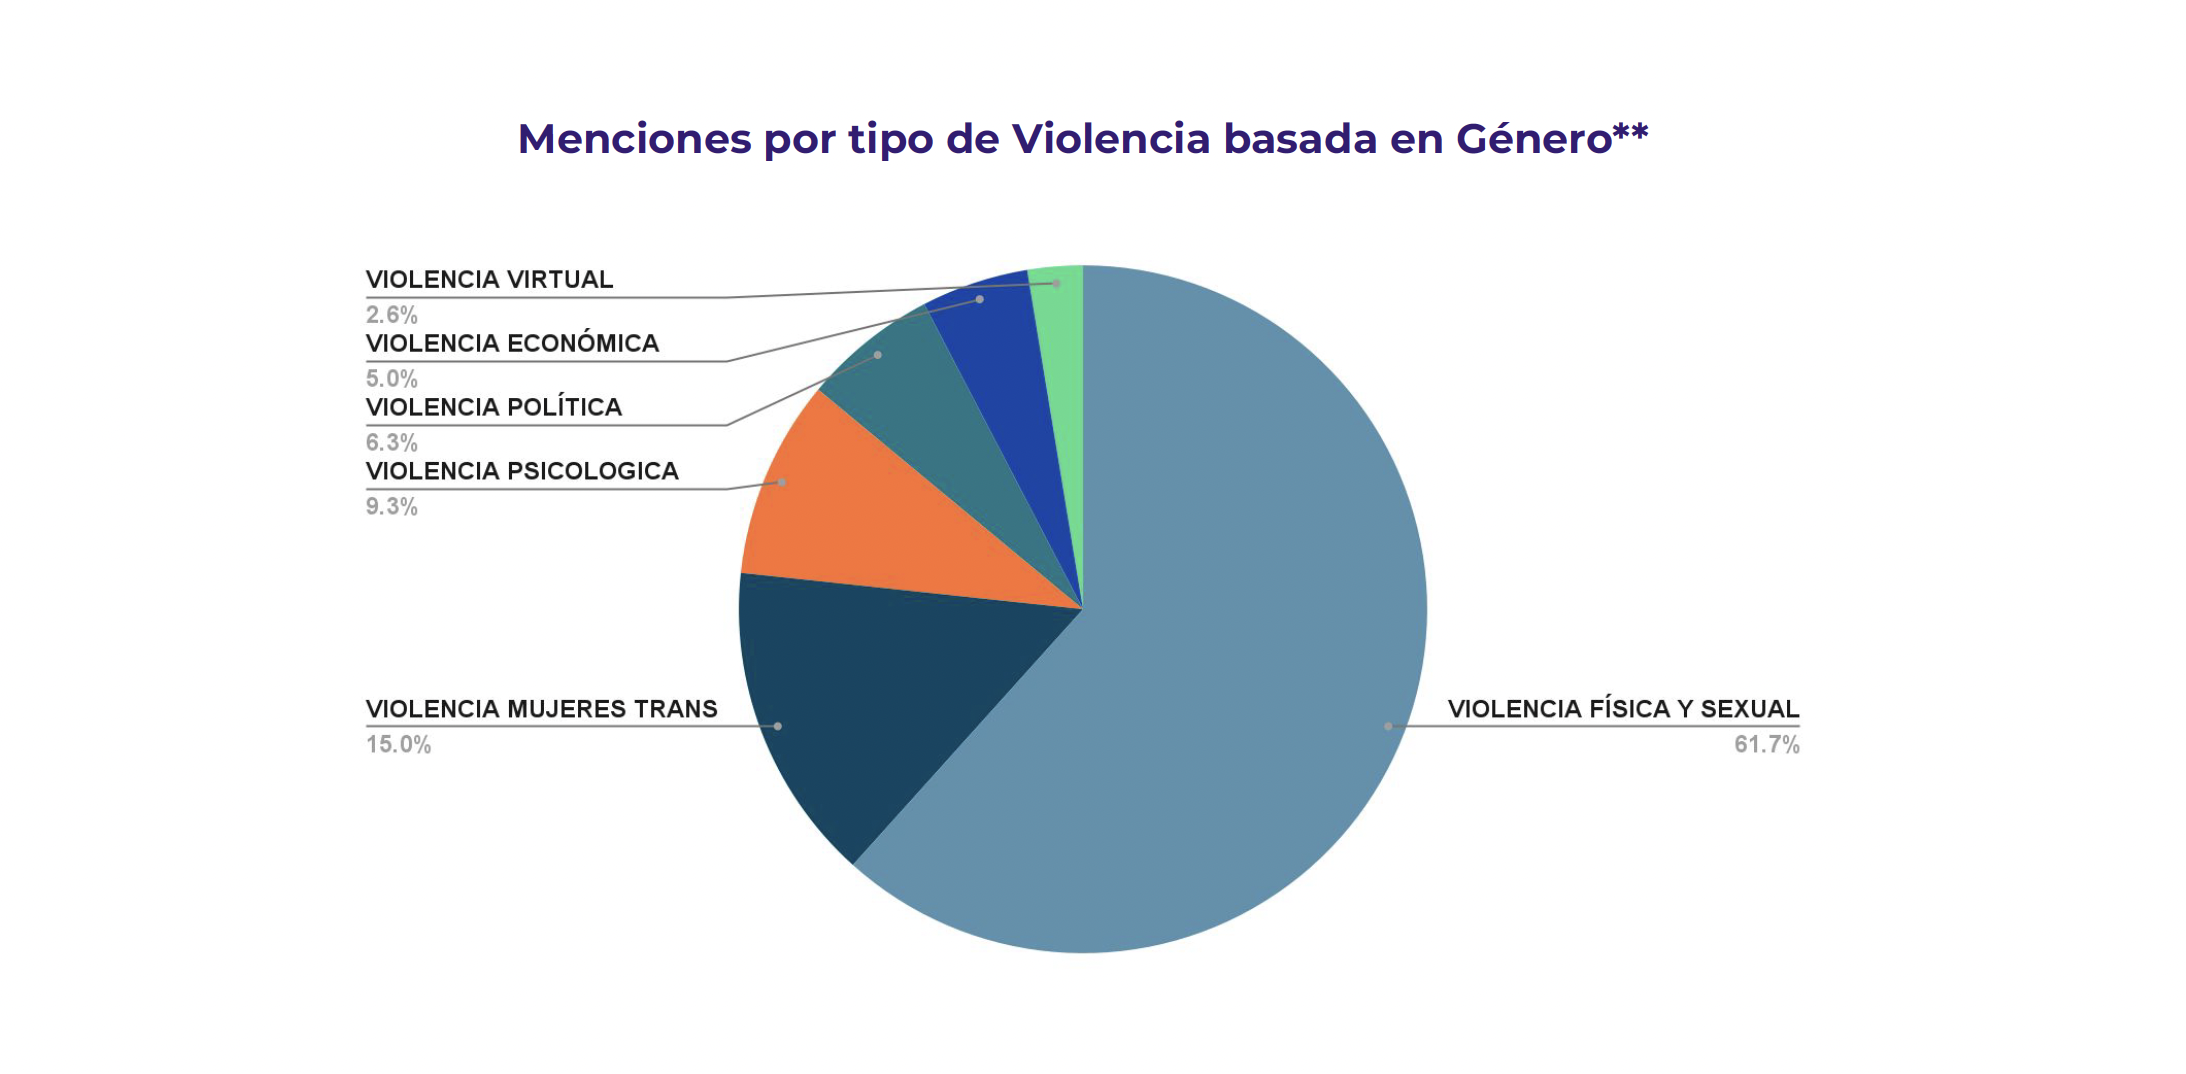 Gráfico de pie que indica cuáles son los porcentajes de menciones por tipo de violencia basada en género. Violencia física y sexual (61.7%), Violencia contra mujeres trans (15.0%), Violencia piscológica (9.3%), Violencia política (6.3%), Violencia económica (5.0%), Violencia virtual (2.6%)